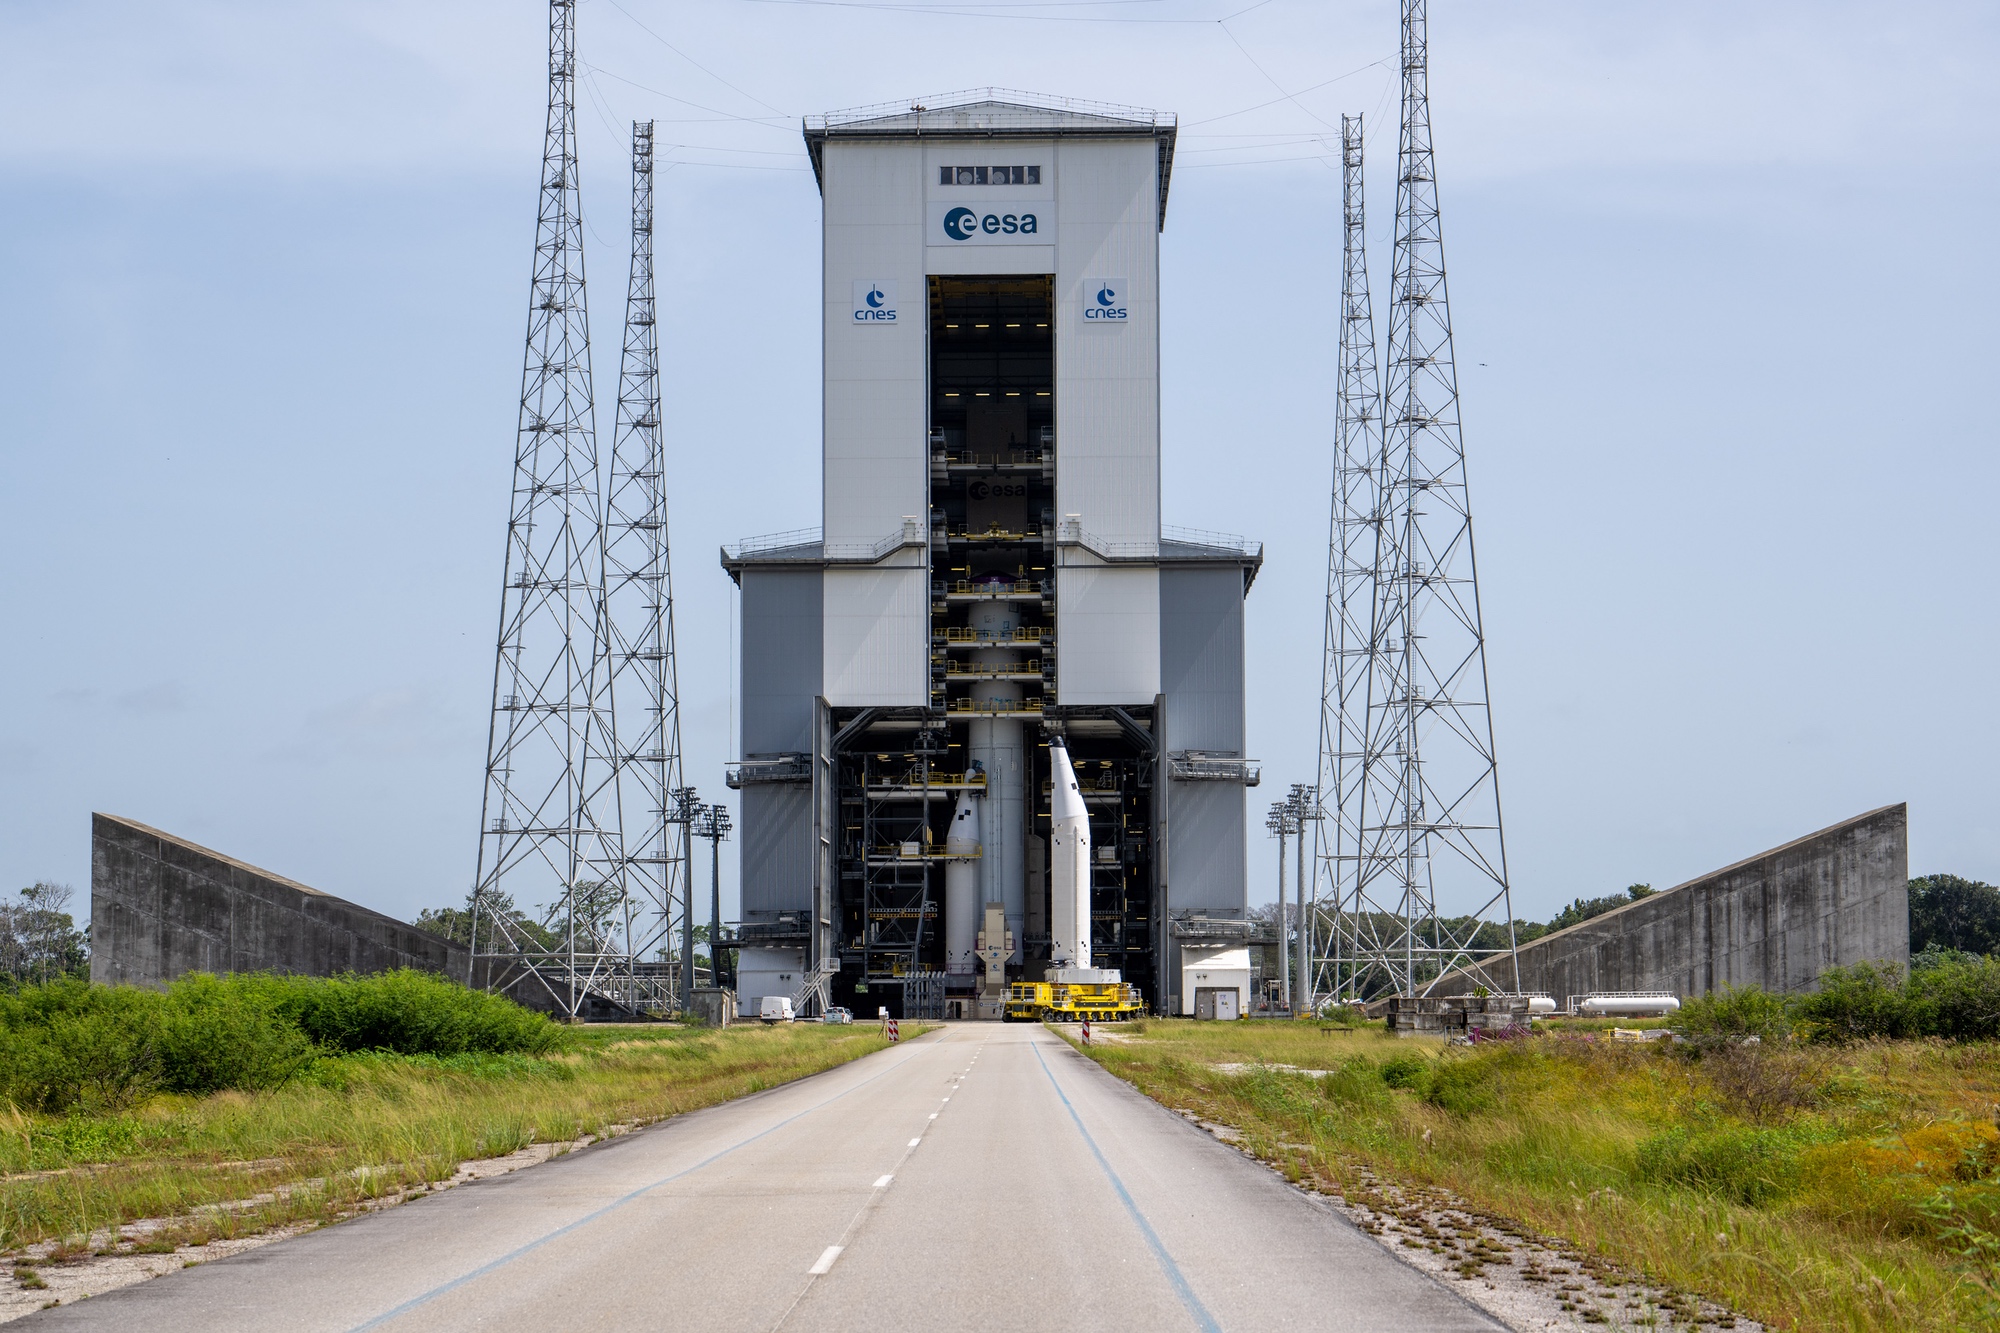 Inauguracyjny start Ariane 6 zaplanowano na pierwszą połowę lipca